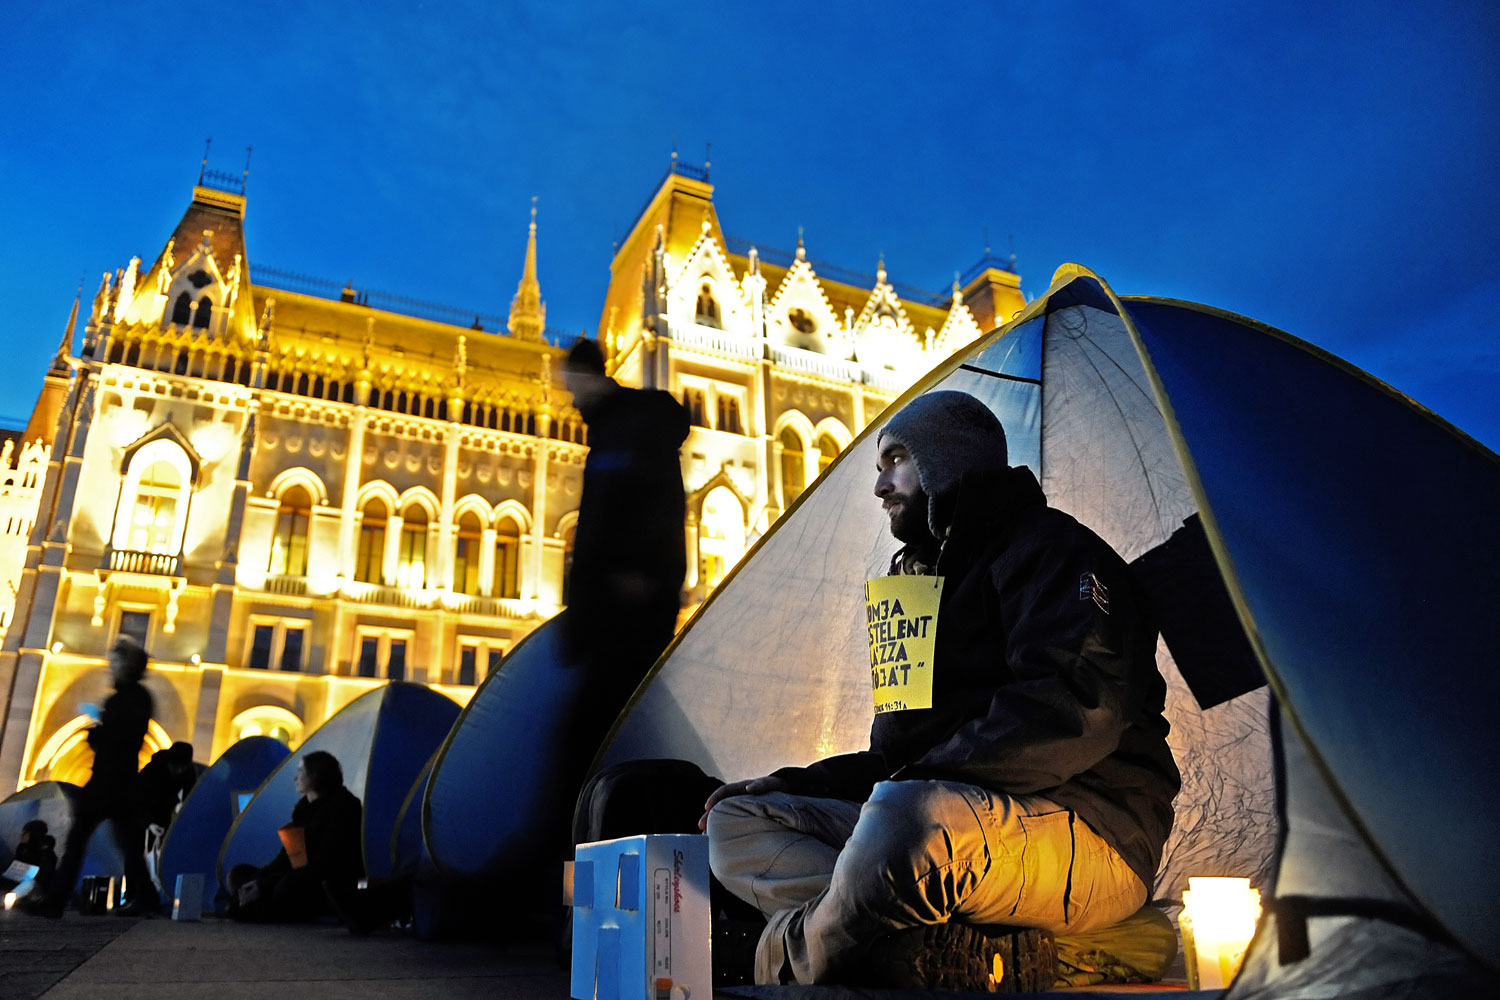 A Város Mindenkié csoport demonstrációja a Kossuth téren a hajléktalanok jogaiért